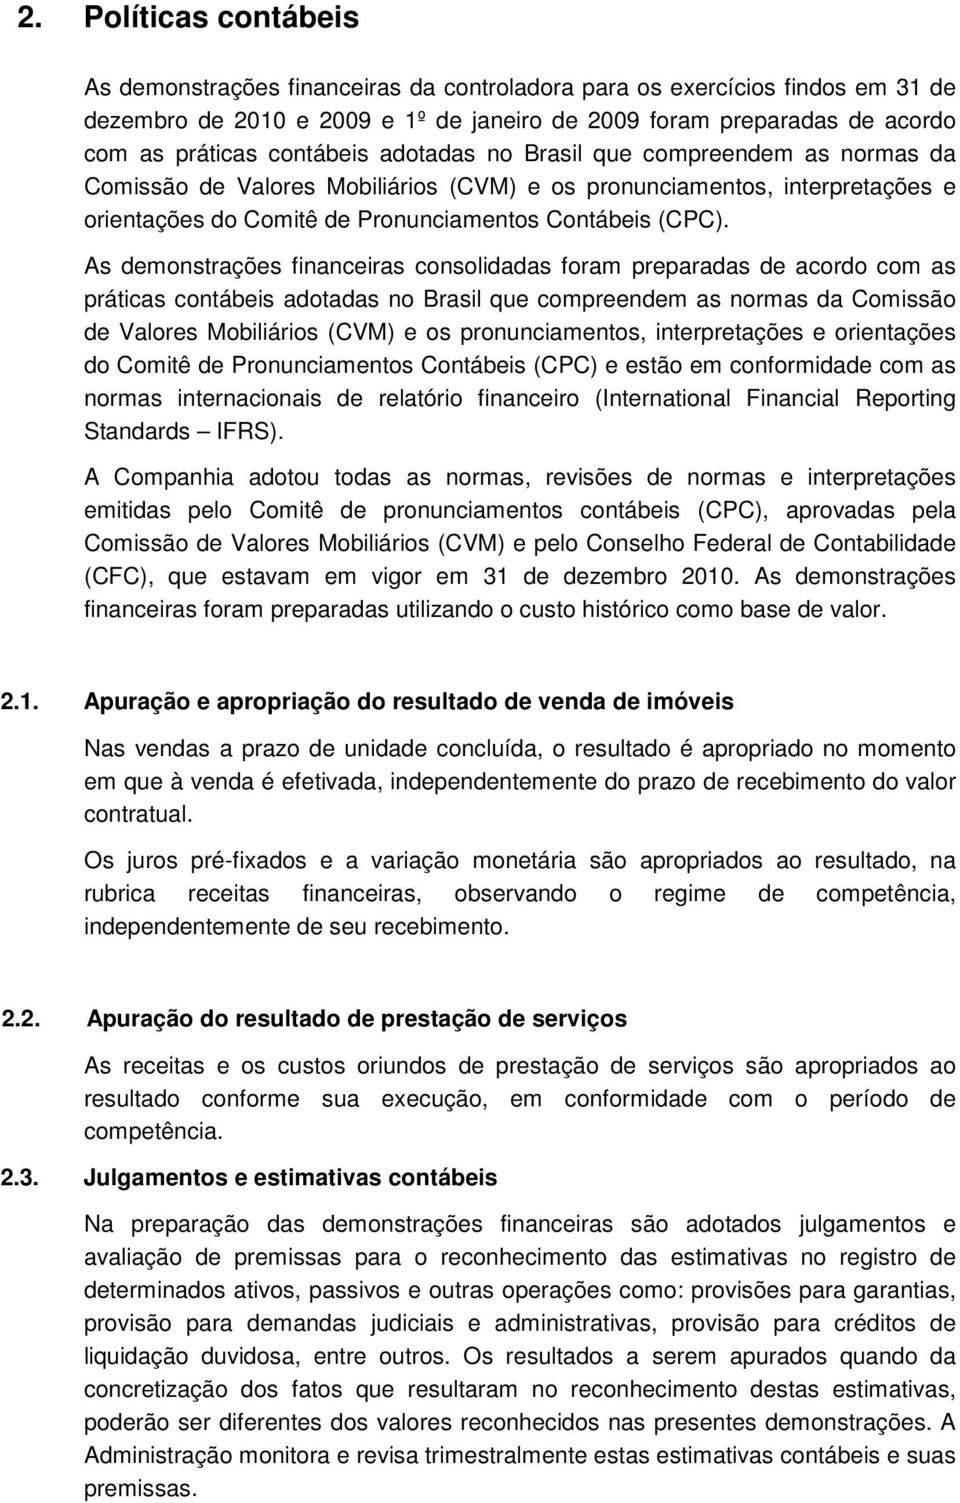 As demonstrações financeiras consolidadas foram preparadas de acordo com as práticas contábeis adotadas no Brasil que compreendem as normas da Comissão de Valores Mobiliários (CVM) e os